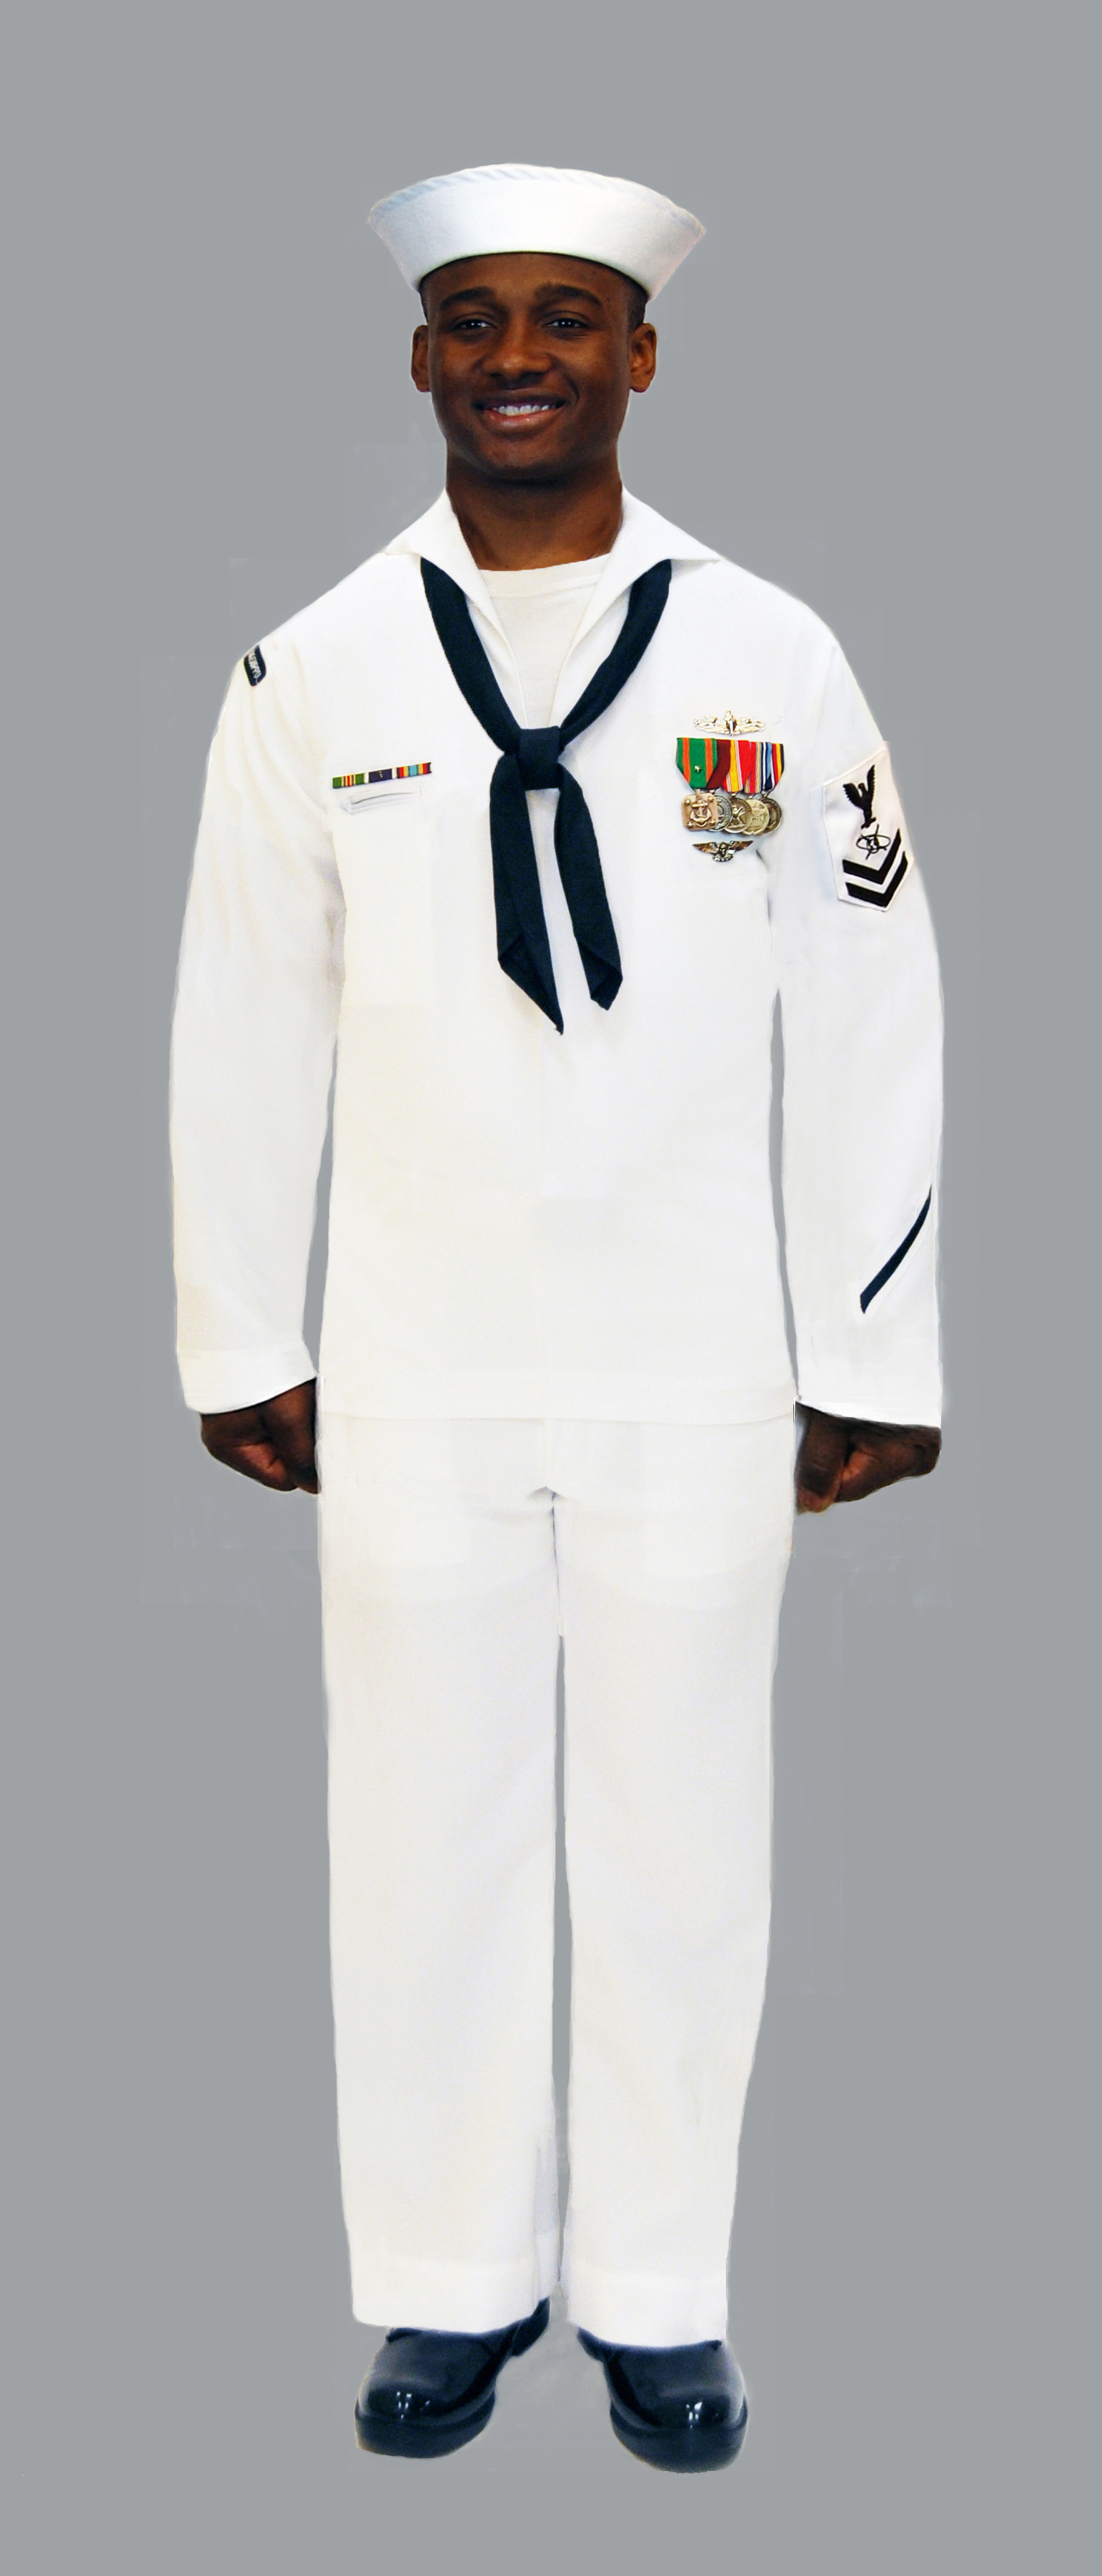 dress whites navy